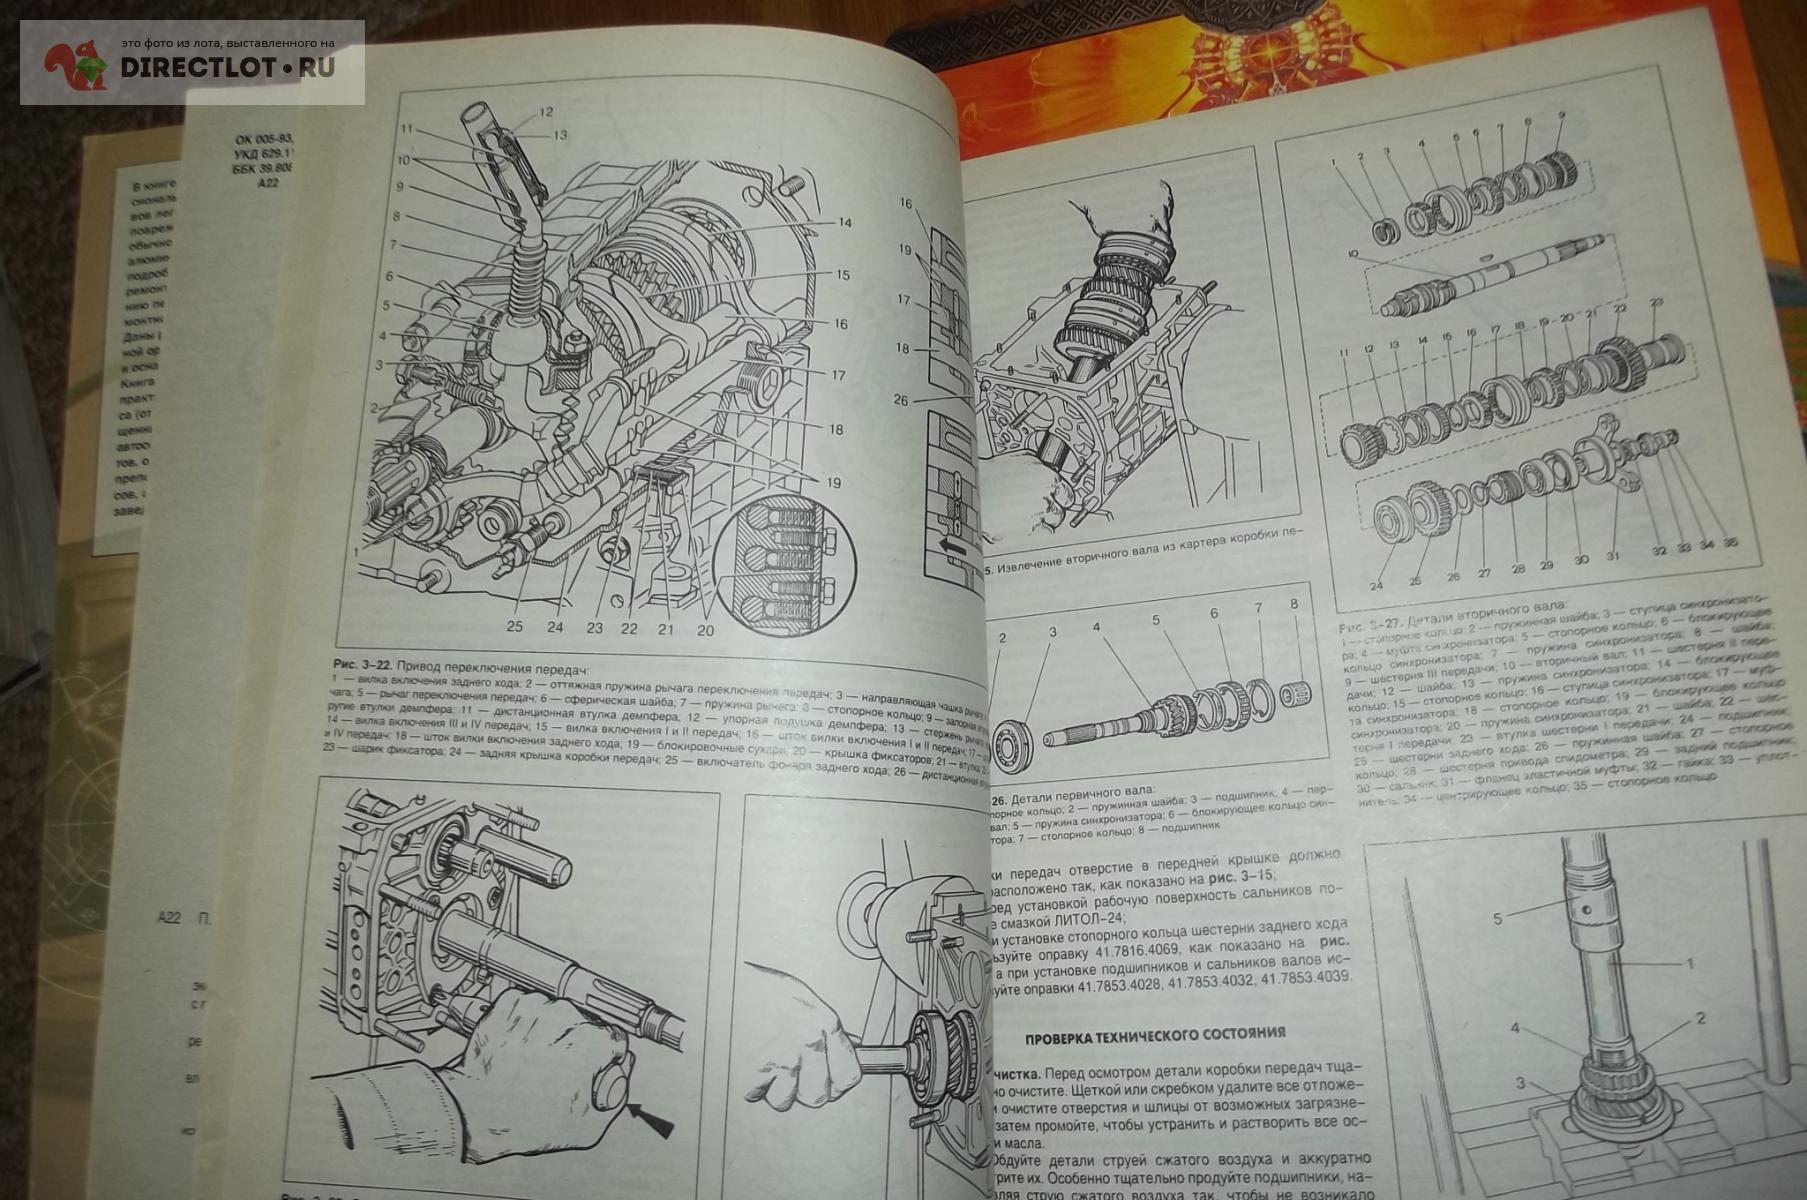 Руководство по ремонту автомобилей ВАЗ 2106, 2103 с каталогом деталей